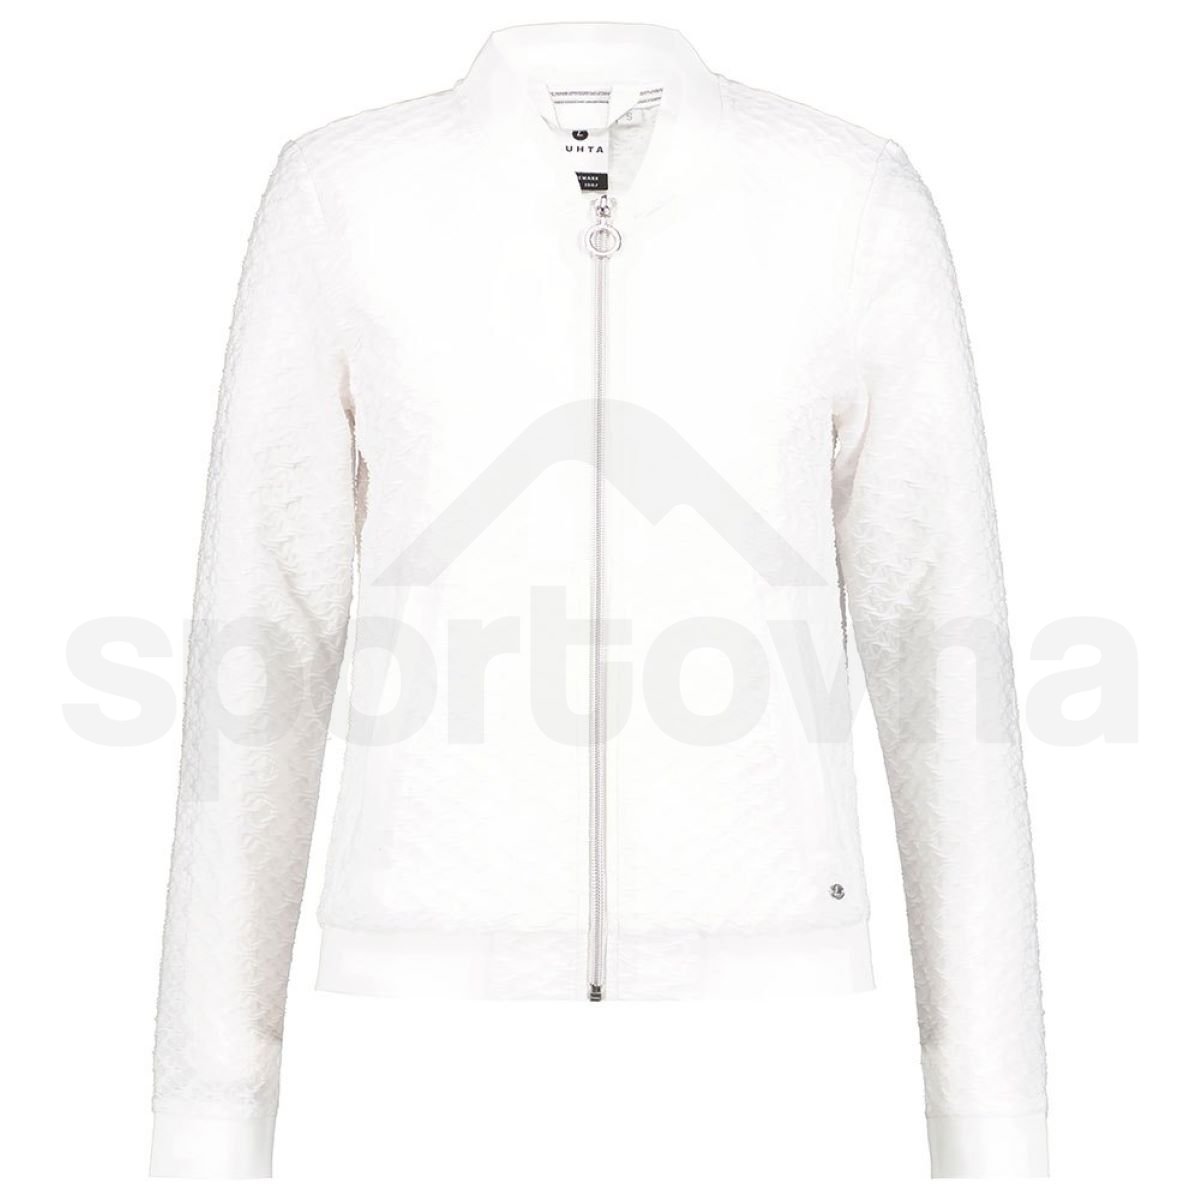 luhta-hermansaari-l-jacket (3)